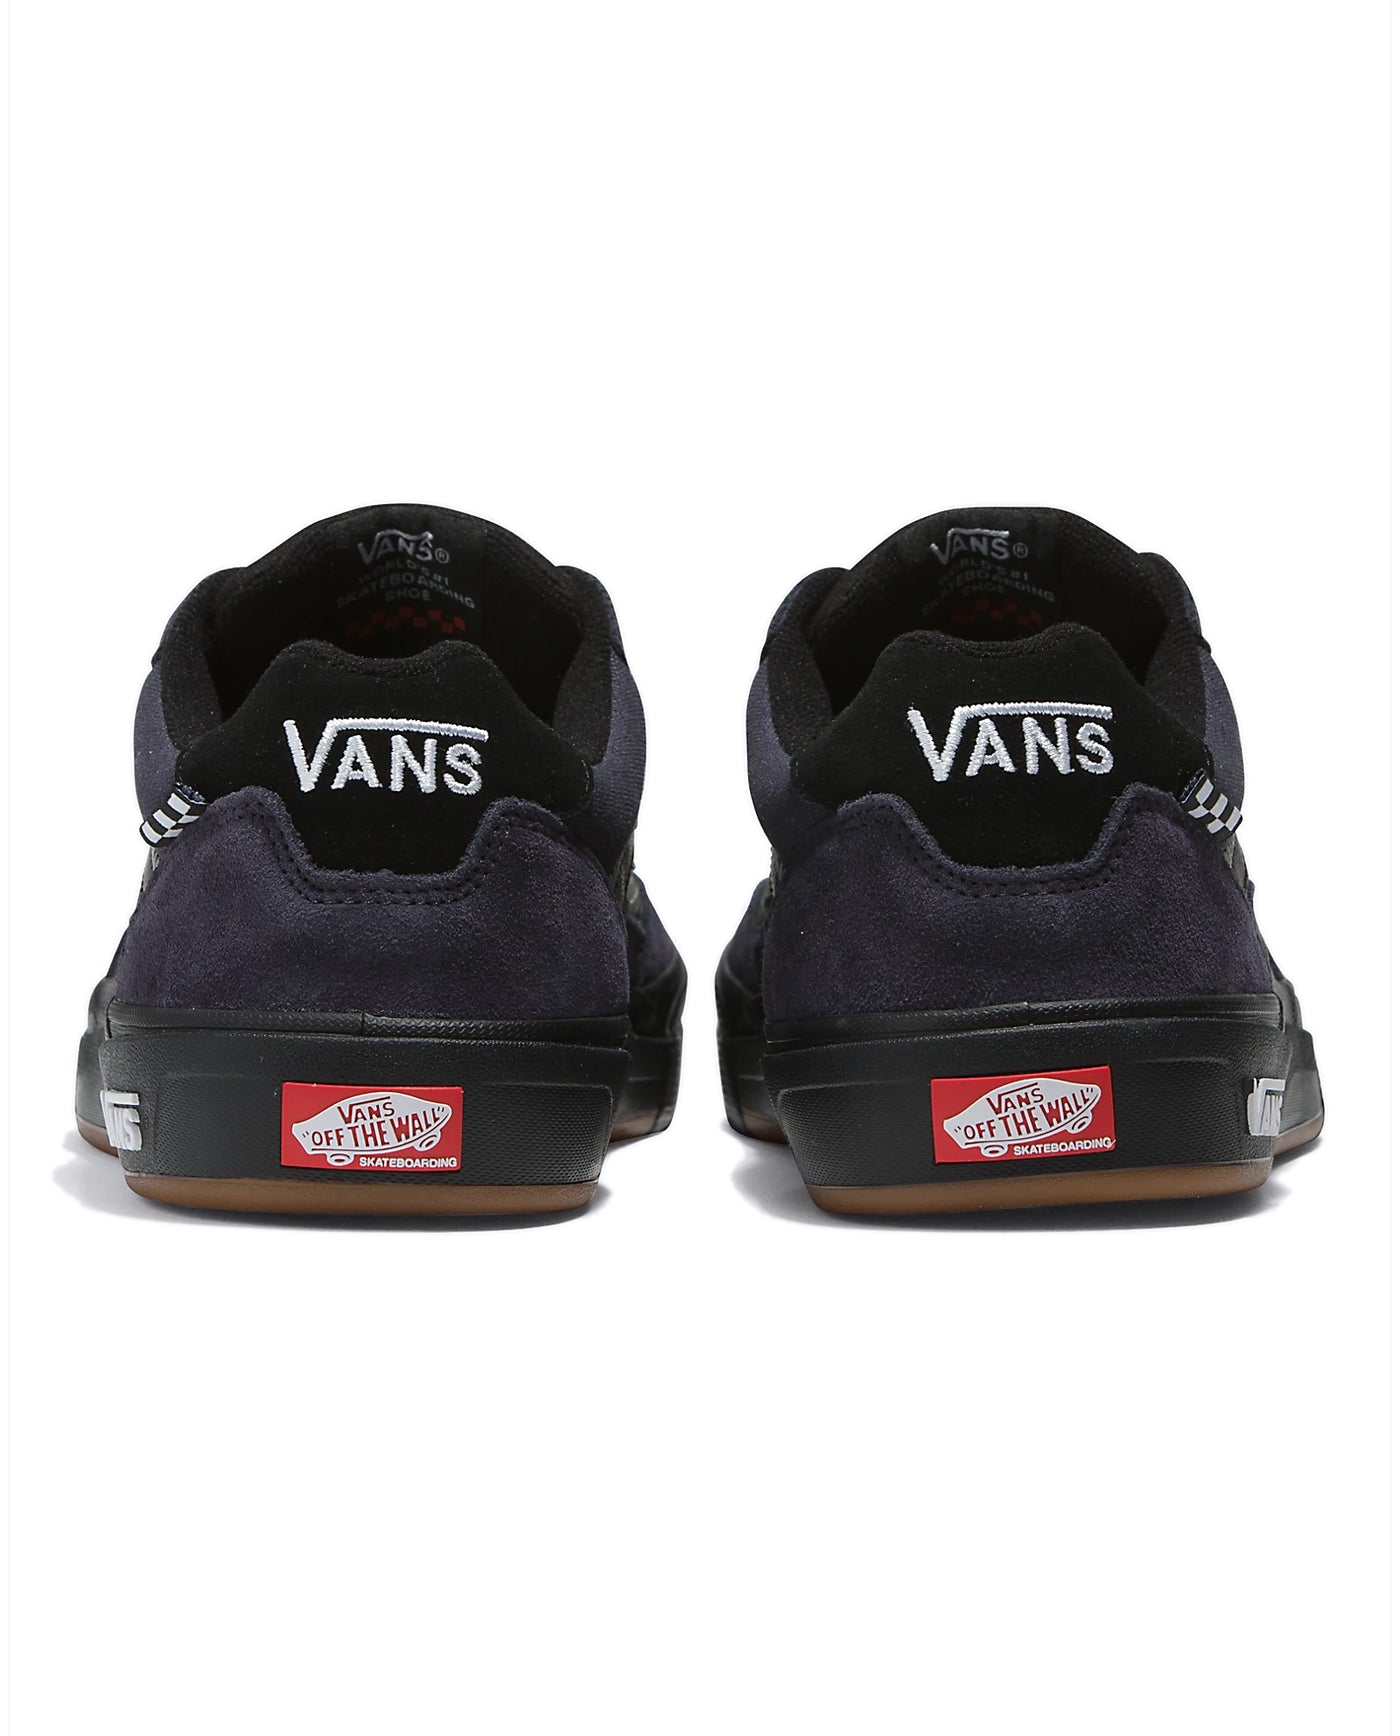 Vans Wayvee Midnight Navy Shoe